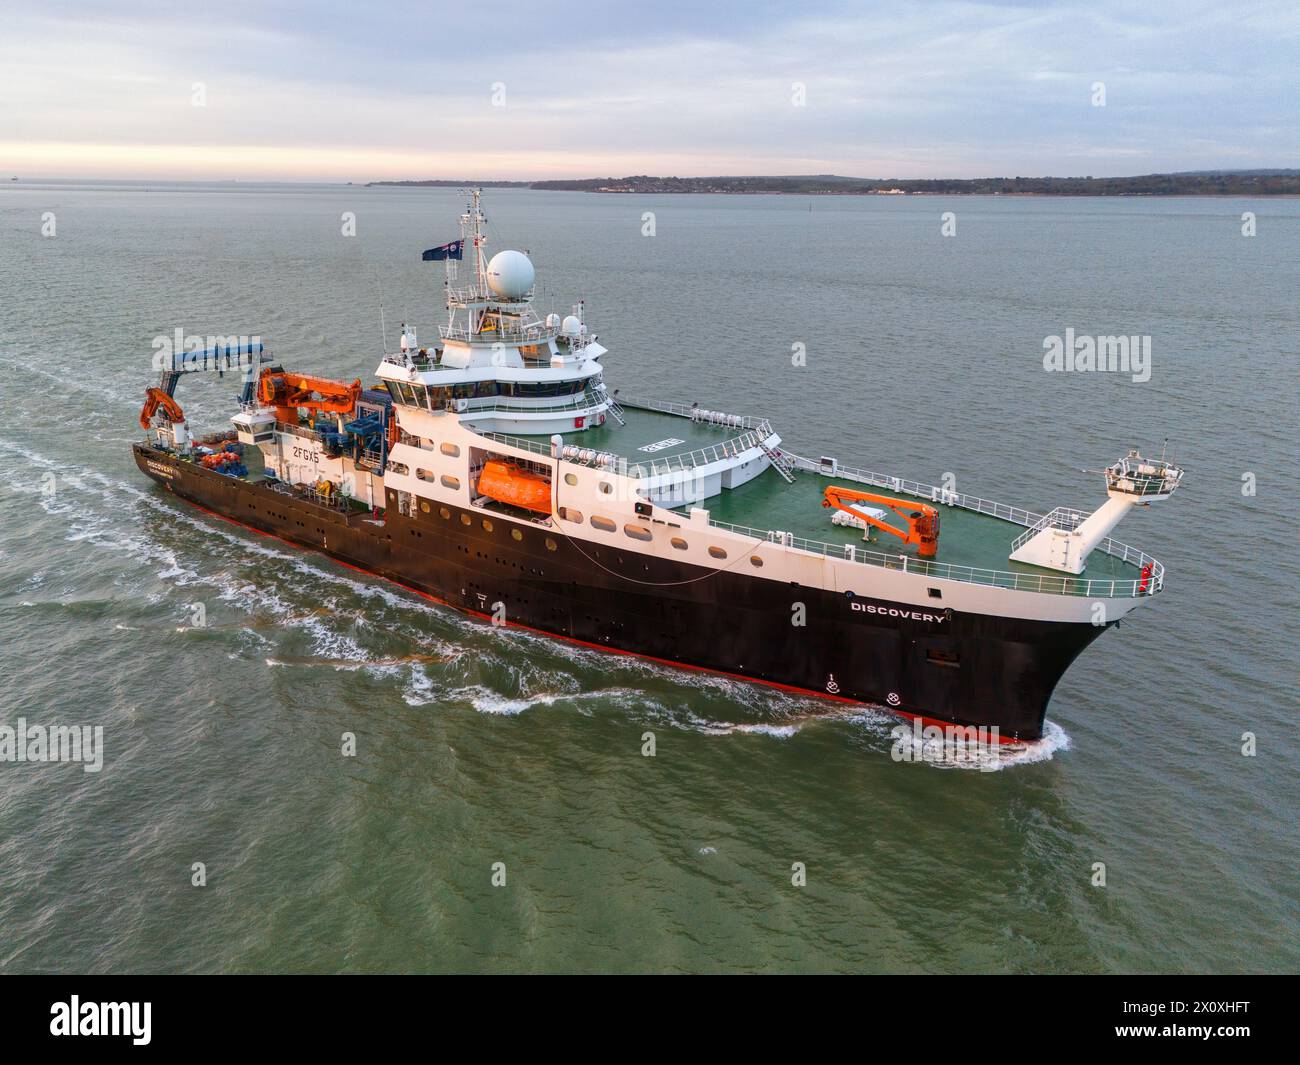 RRS Discovery è una nave oceanografica gestita da diverse agenzie nazionali per svolgere ricerche scientifiche per il governo britannico. Foto Stock